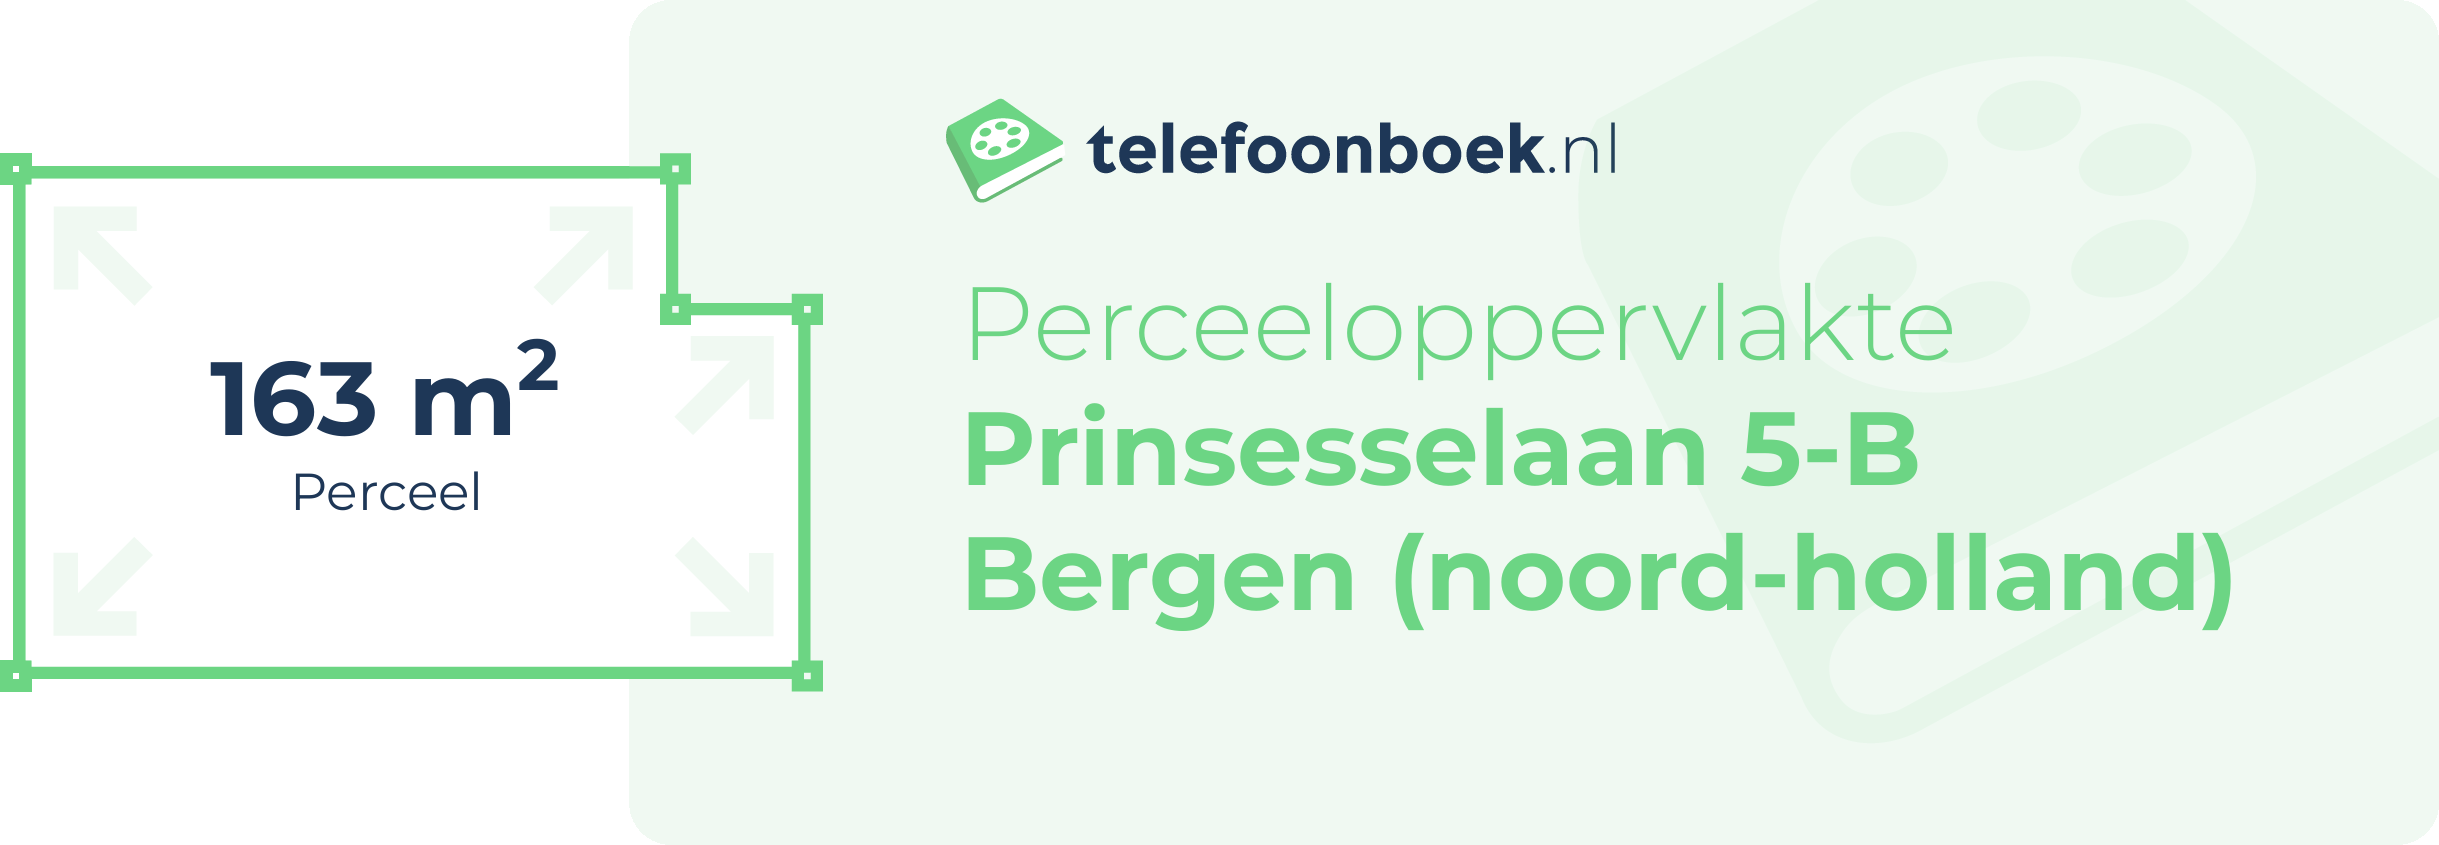 Perceeloppervlakte Prinsesselaan 5-B Bergen (Noord-Holland)